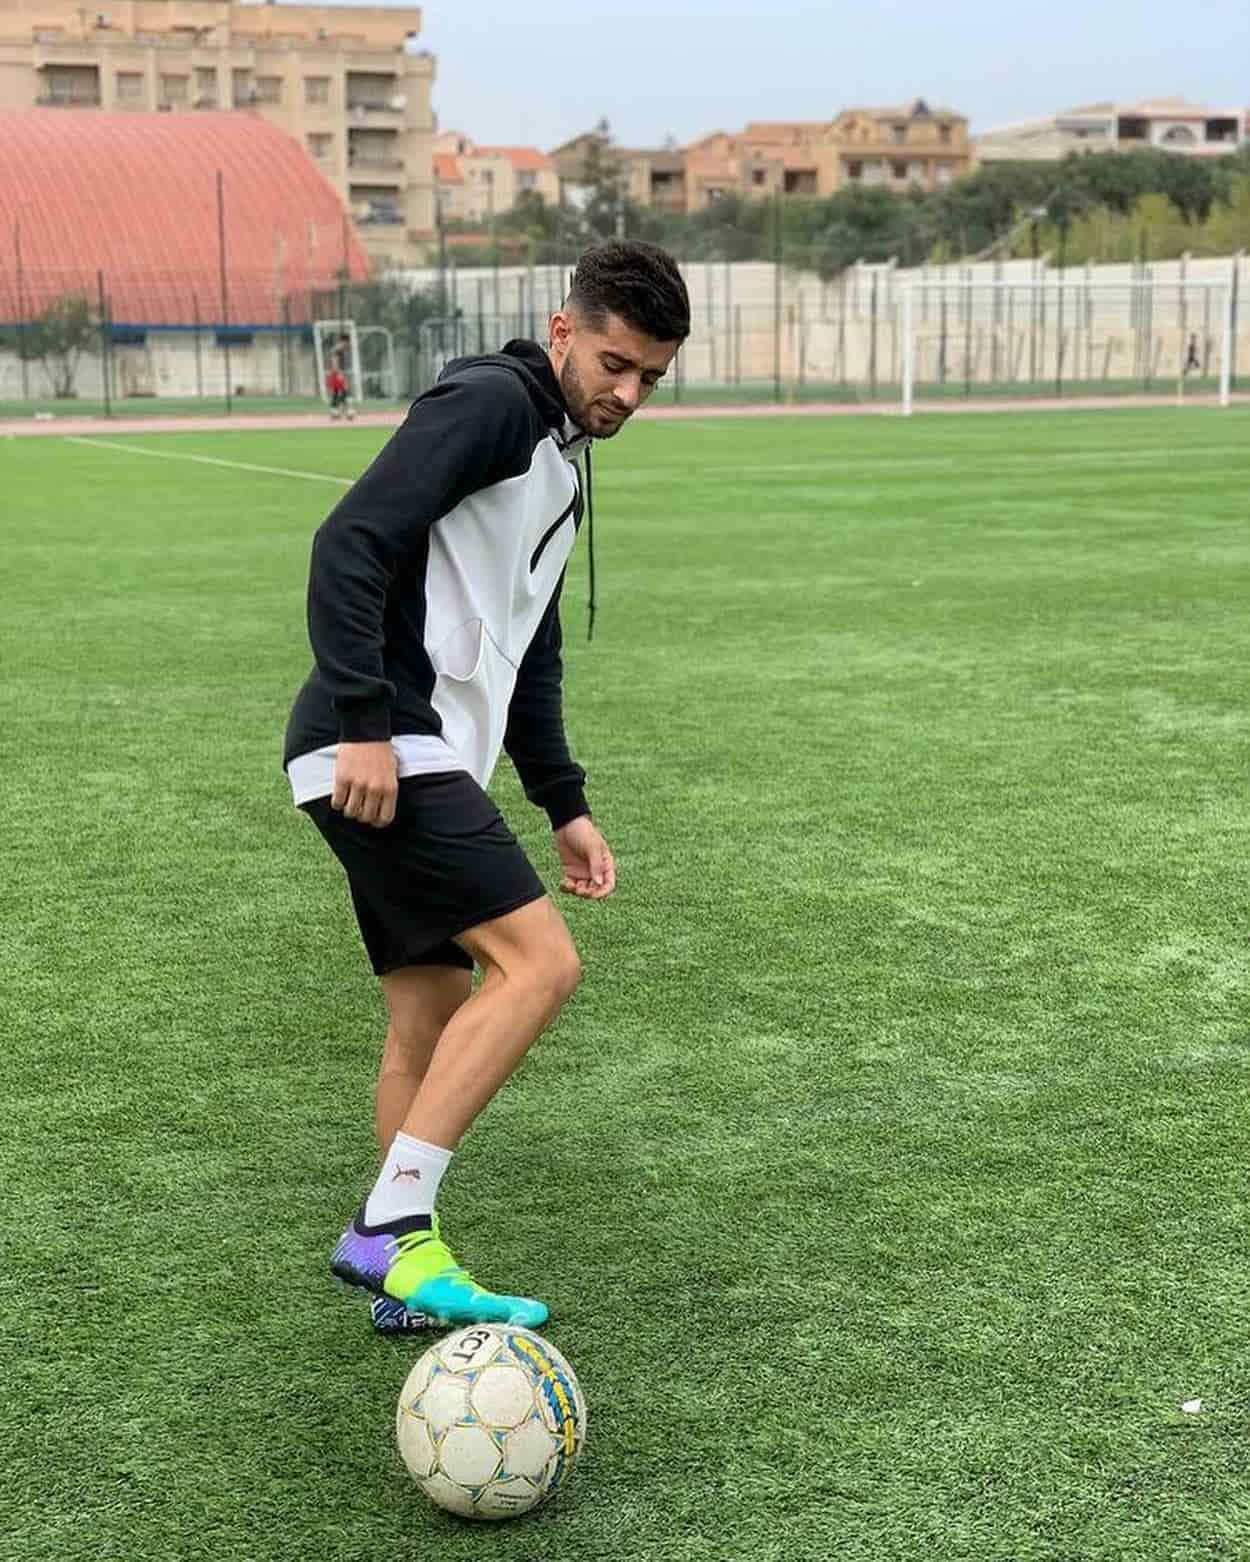 Fußballer beim Training am Fußballplatz mit türkisen PUMA Fußballschuhen